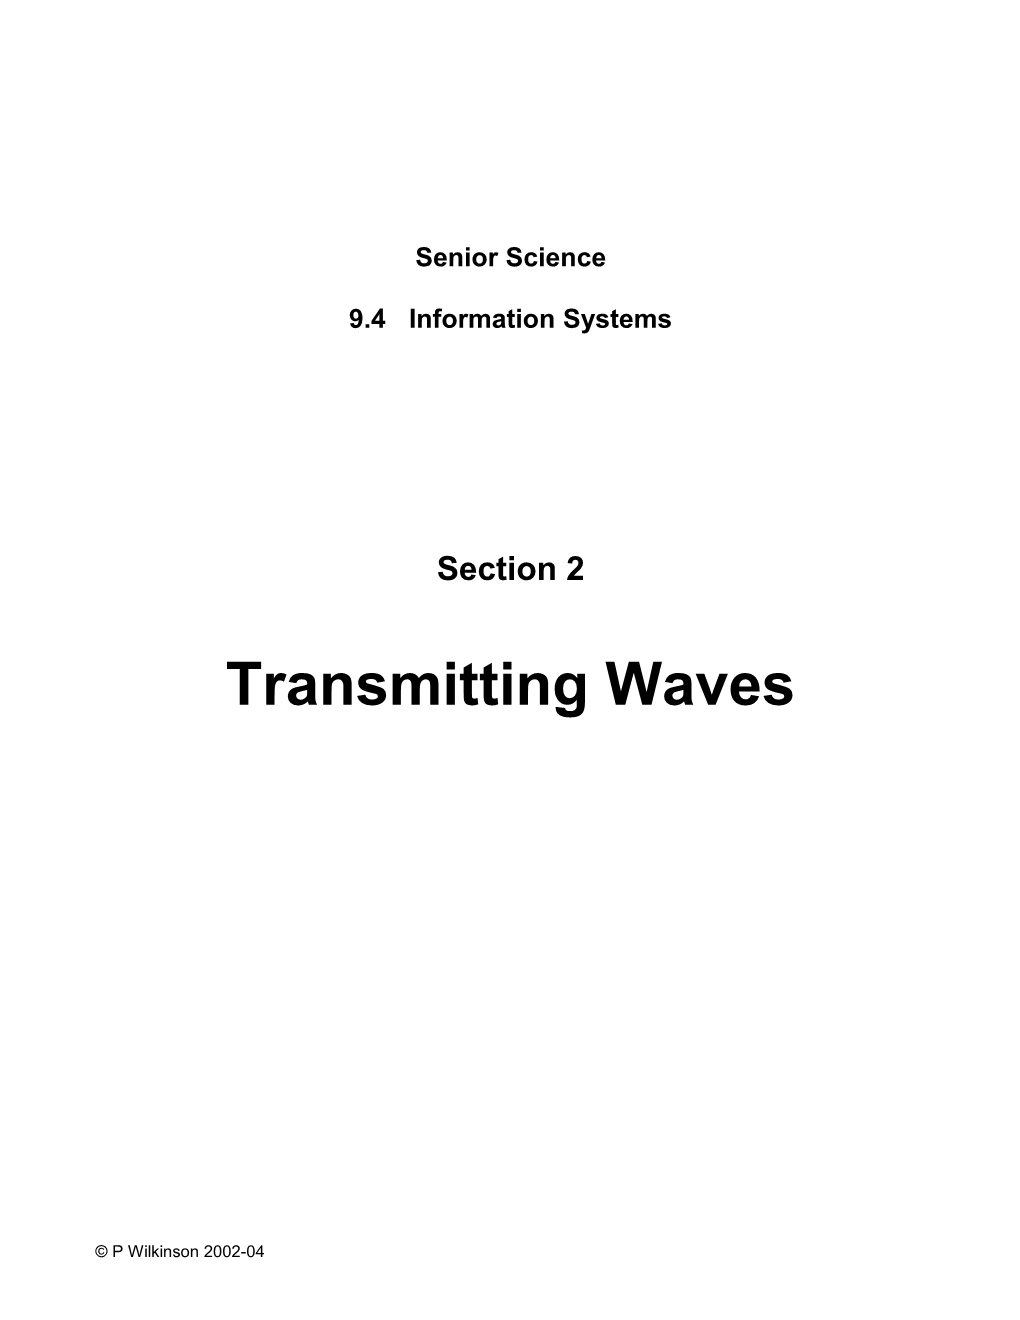 Transmitting Waves